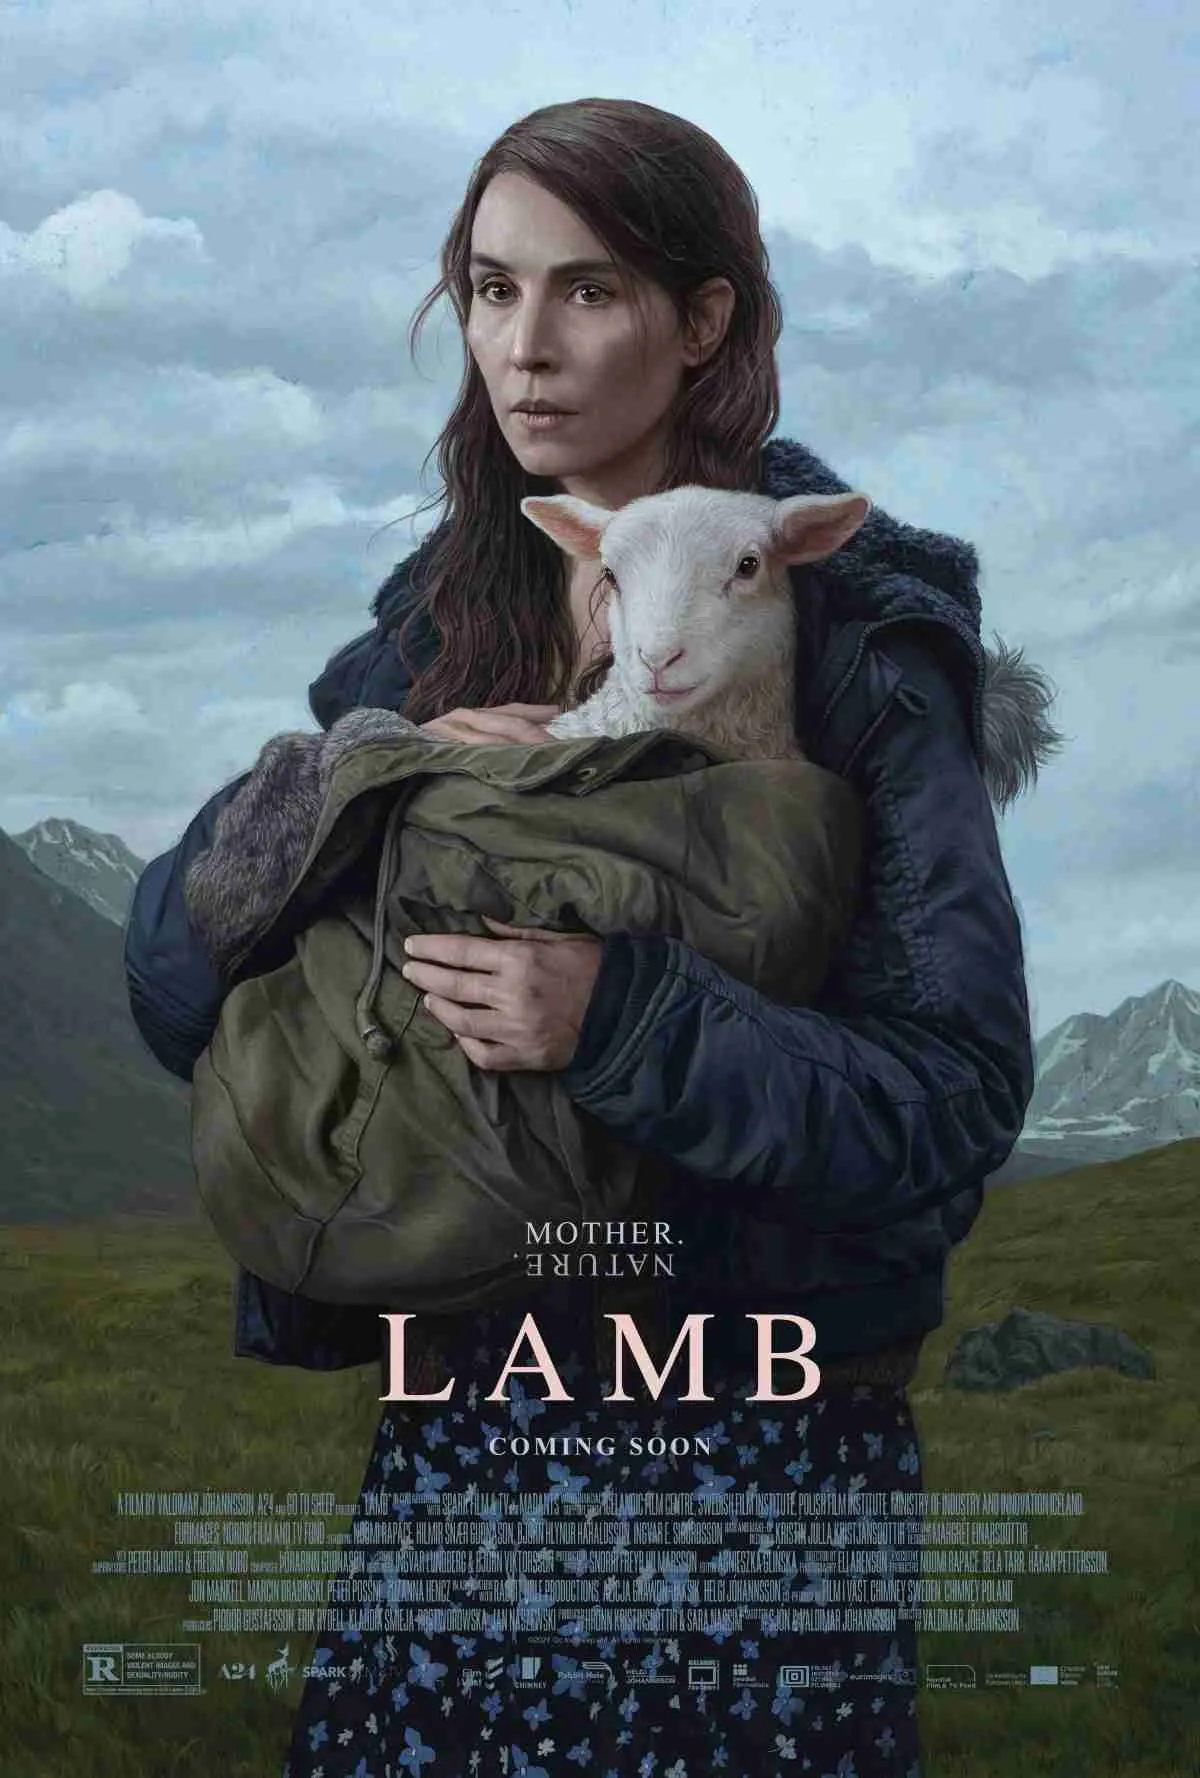 Lamb Review